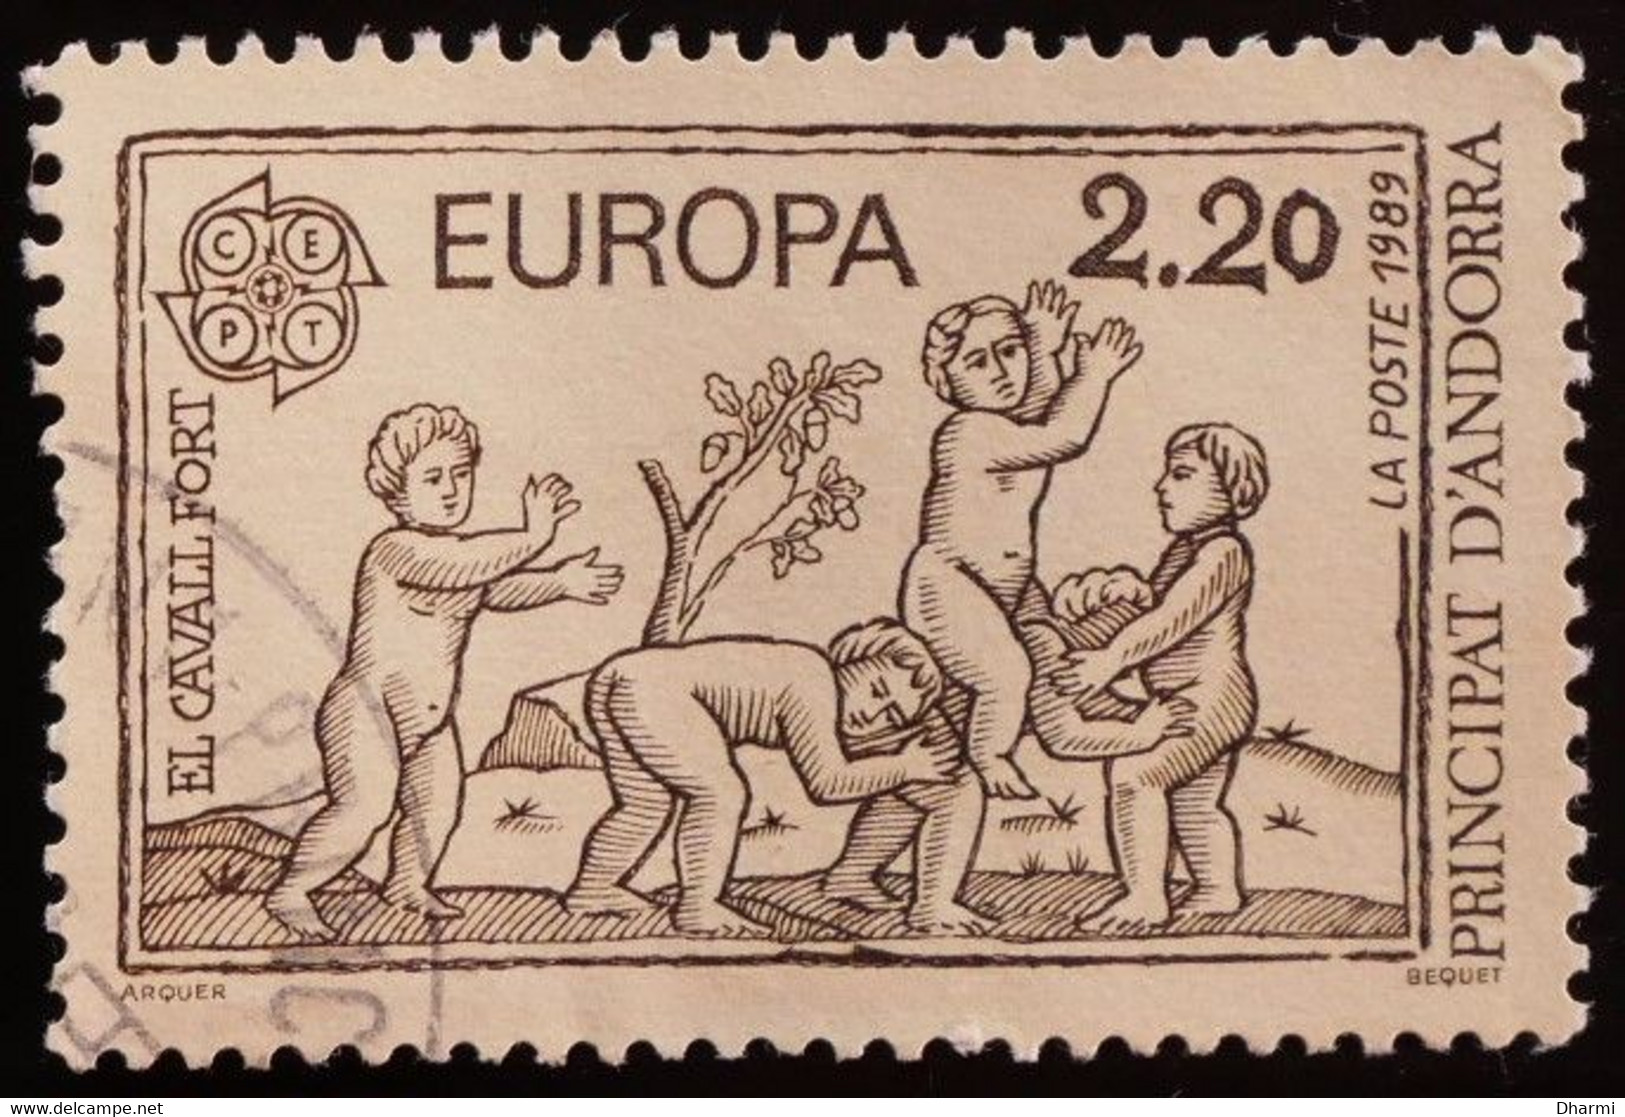 ANDORRE FR 1989 N°378 Oblitéré - 2,20F - EUROPA - JEUX ENFANTS - USED - Used Stamps